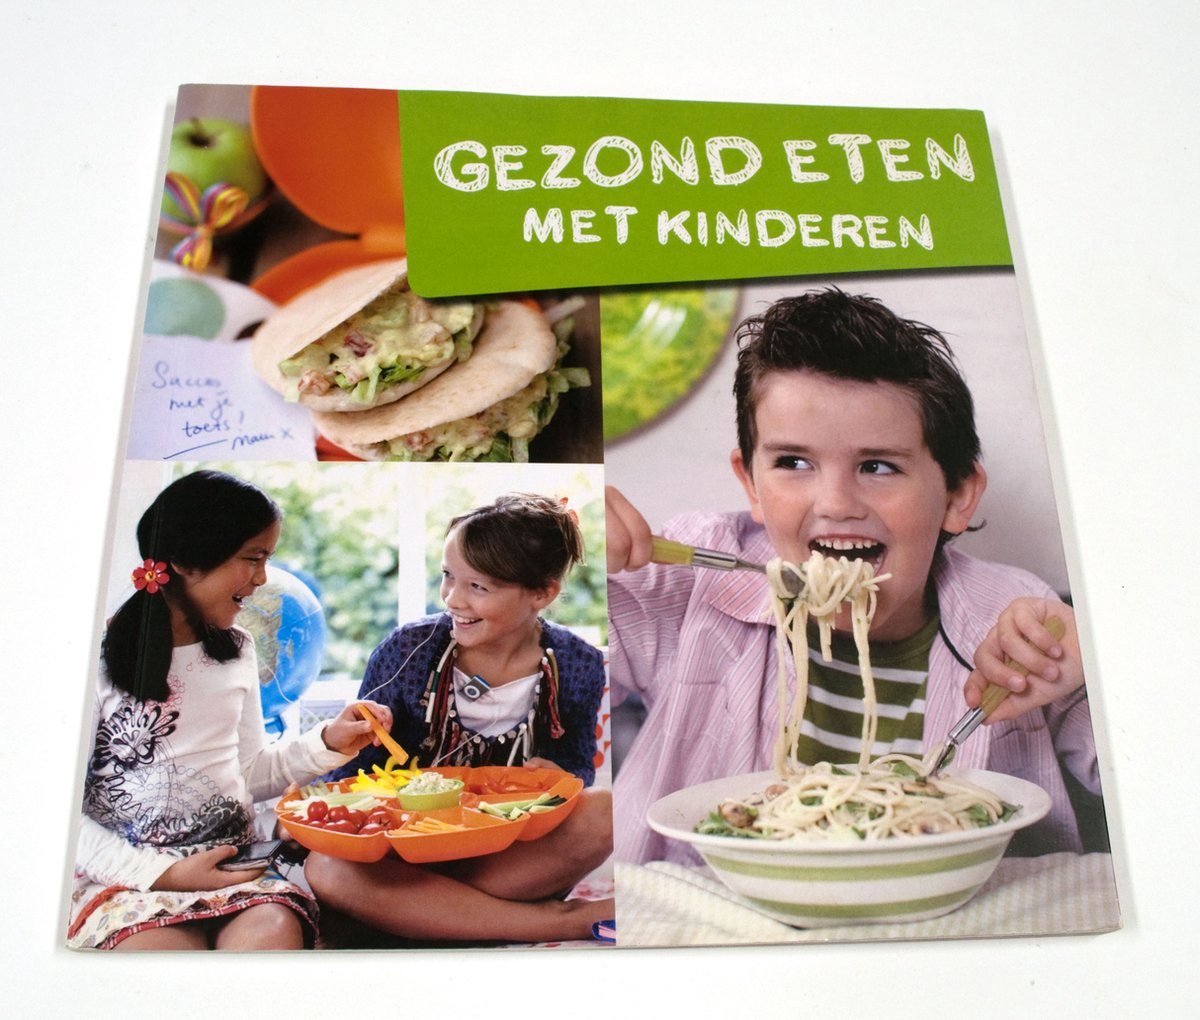 Gezond eten met kinderen - uitgave zorg en zekerheid (Natalis)